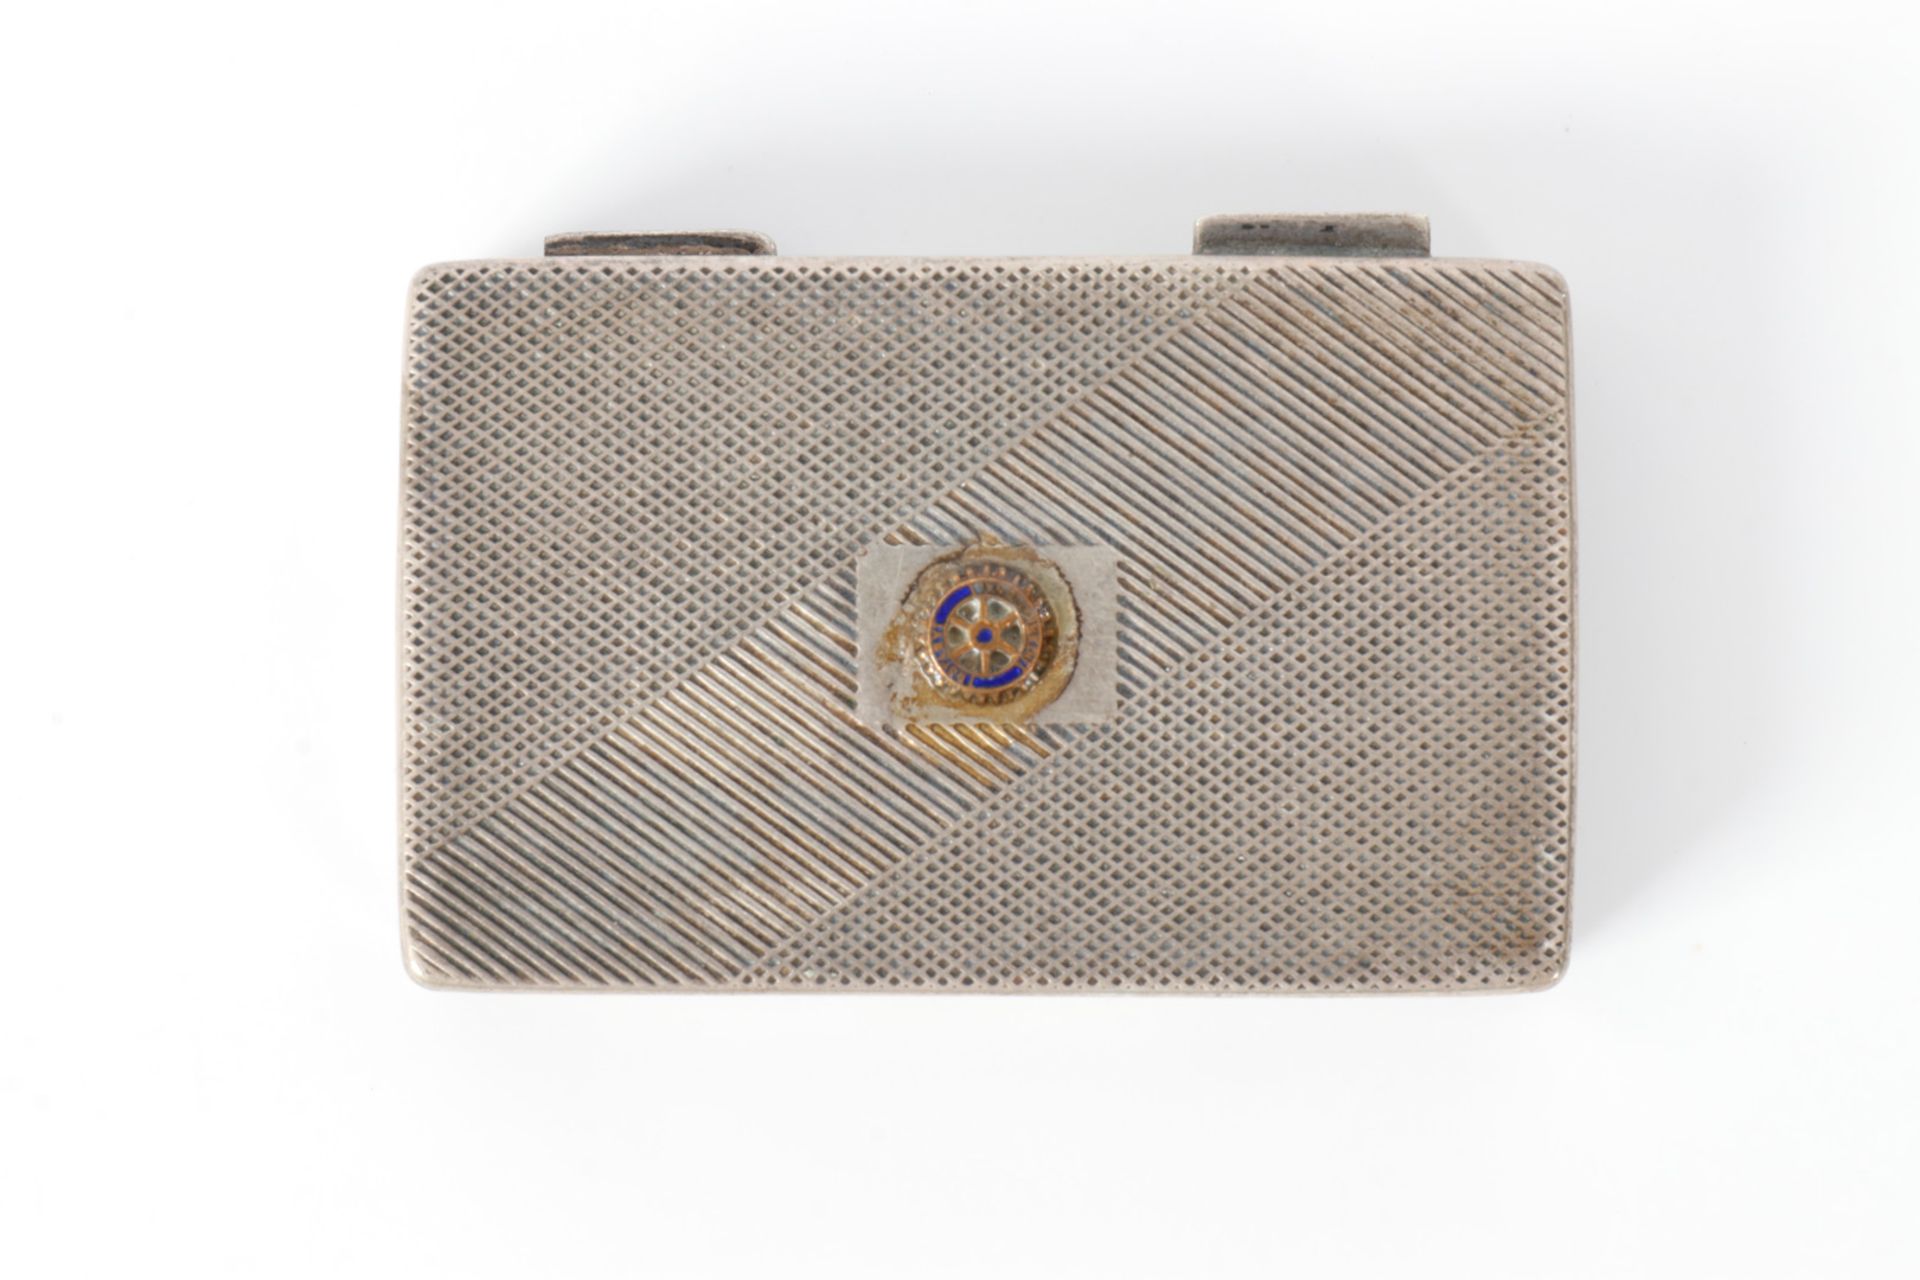 Streichholzschatulle, silber 800, gestempelt, mit aufgeklebtem Rotary Emblem, L 6 - Bild 3 aus 4